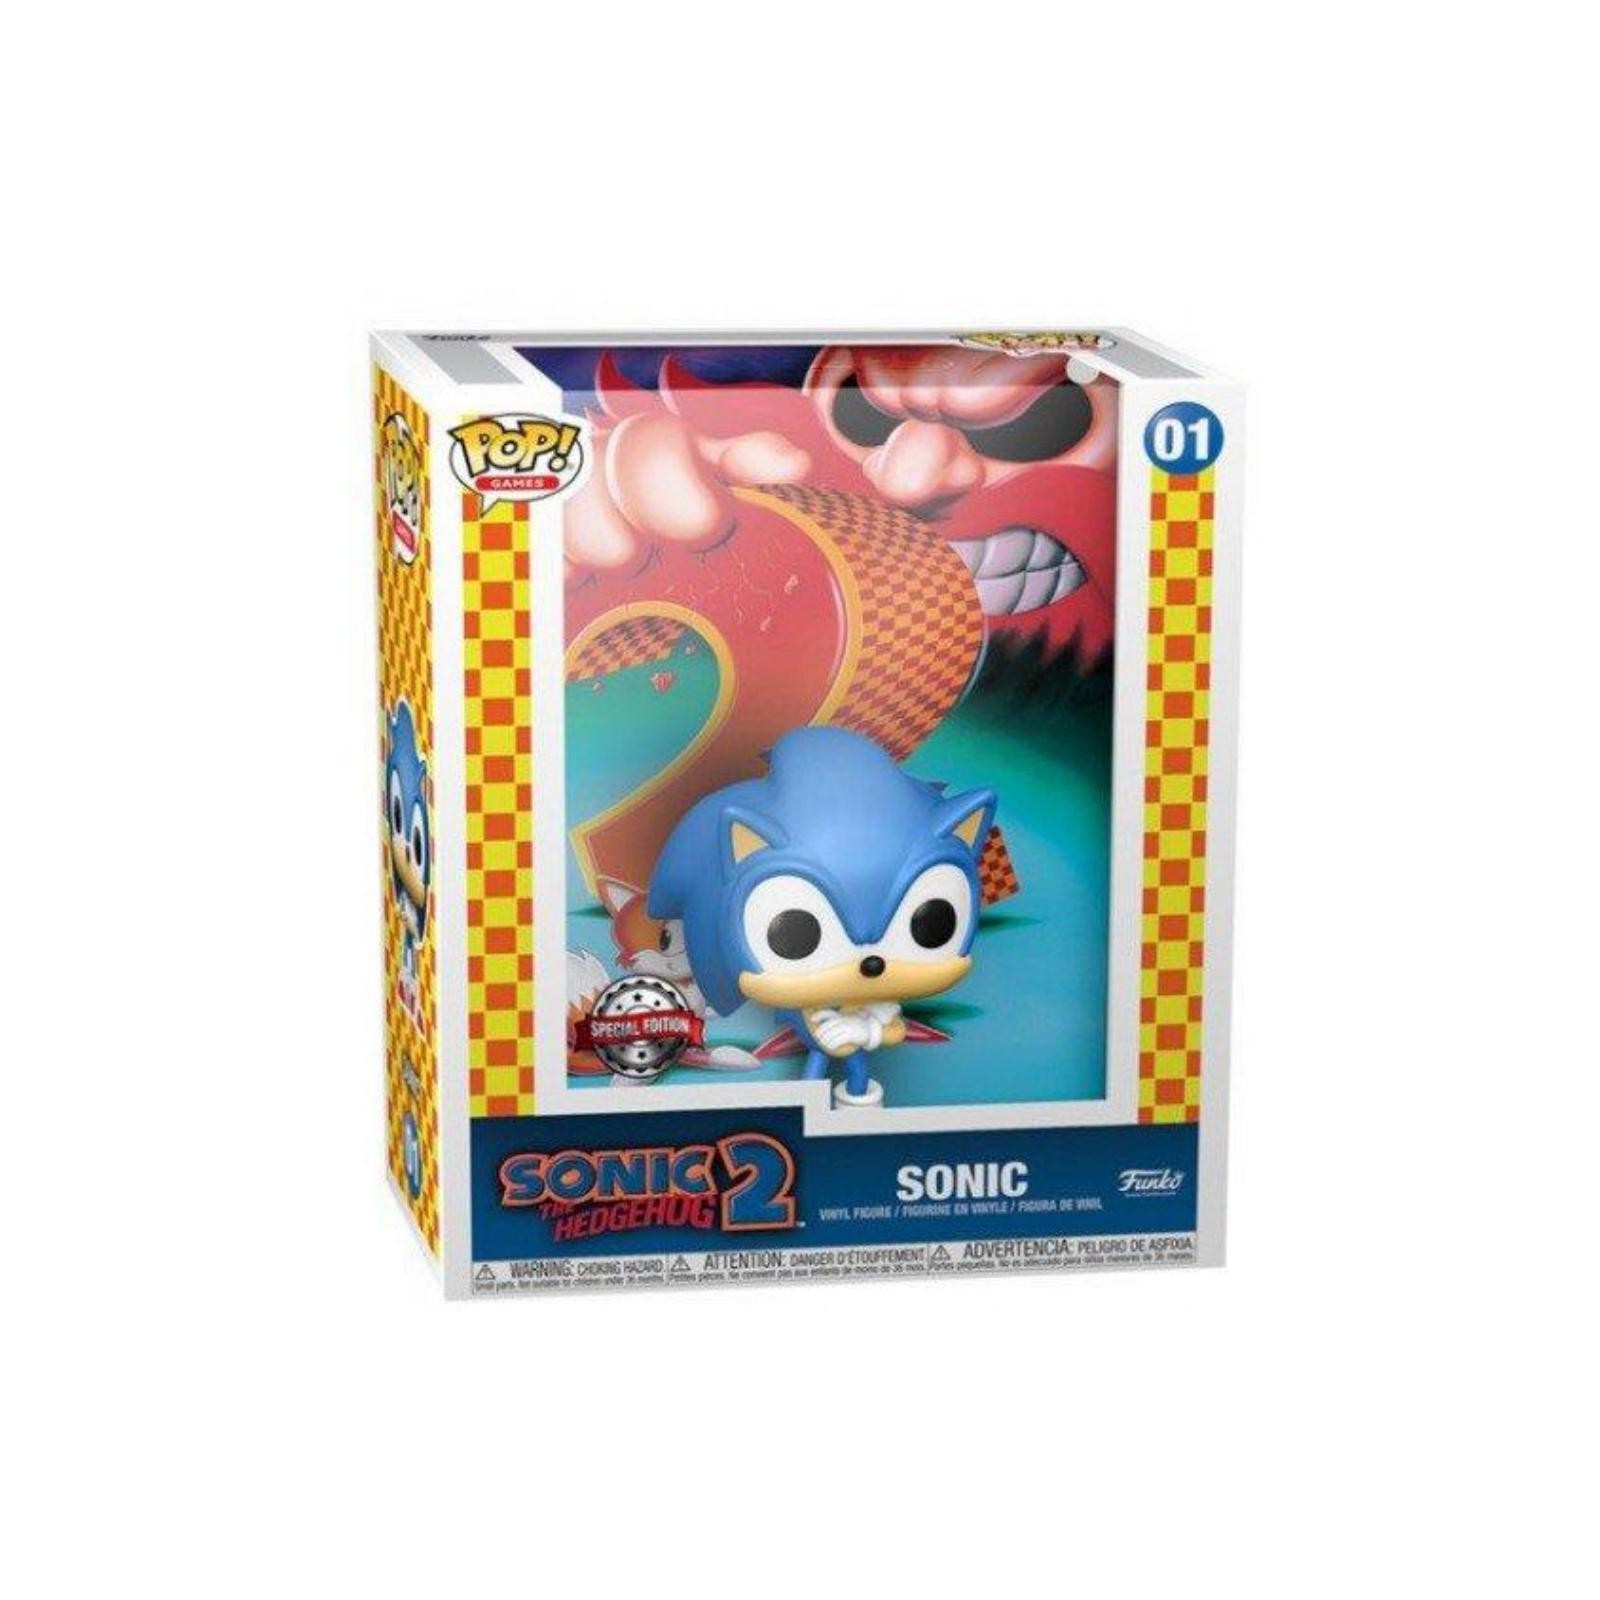 Figura Funko Pop Hedgehog 2 Cover Sticker Edition